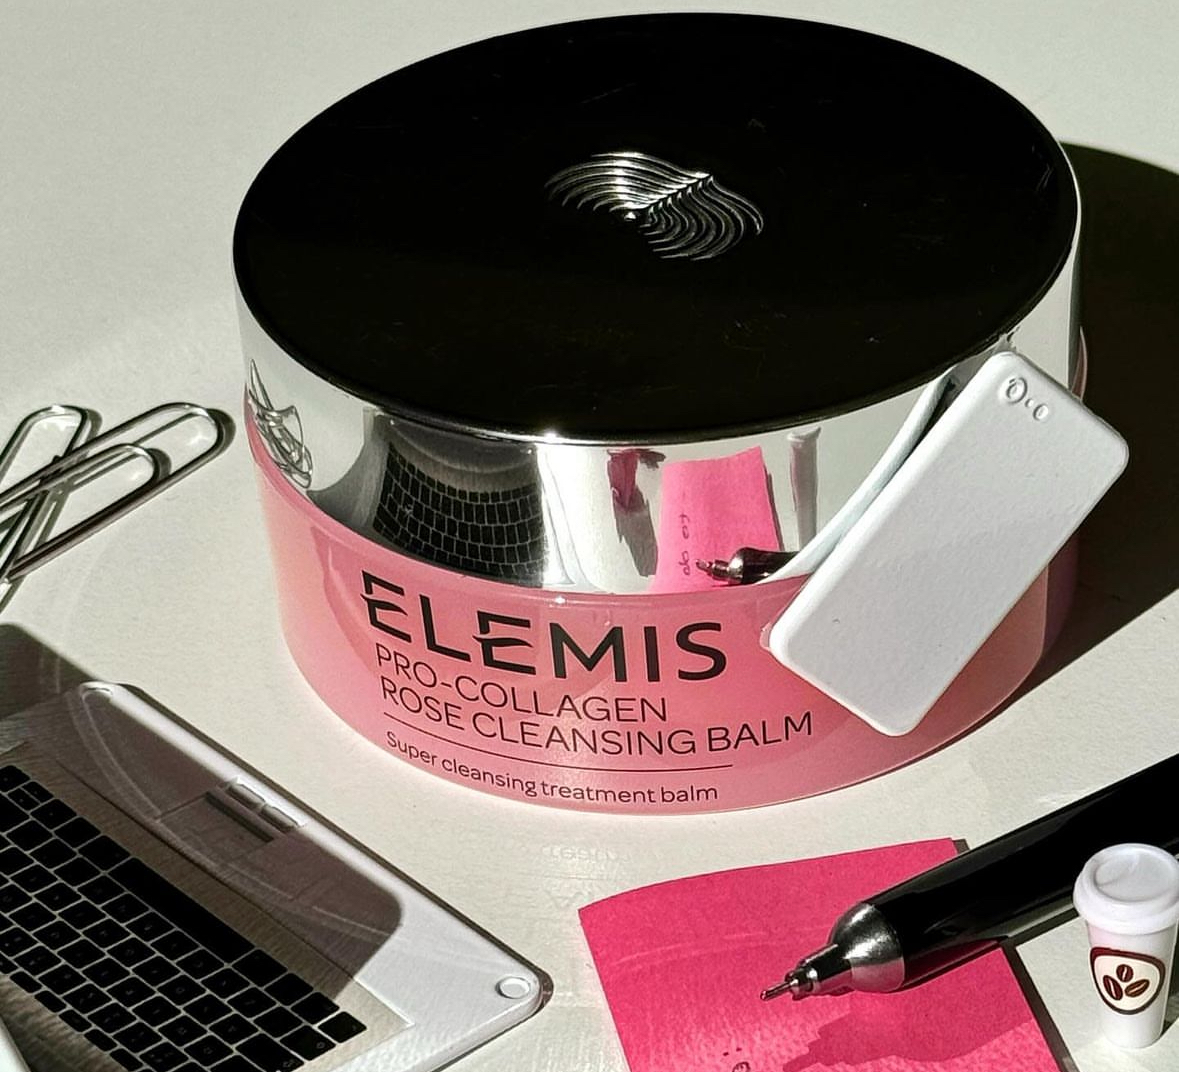 Δοκιμάσαμε το Elemis-Pro Collagen Rose Cleansing Balm και ιδού το review μας